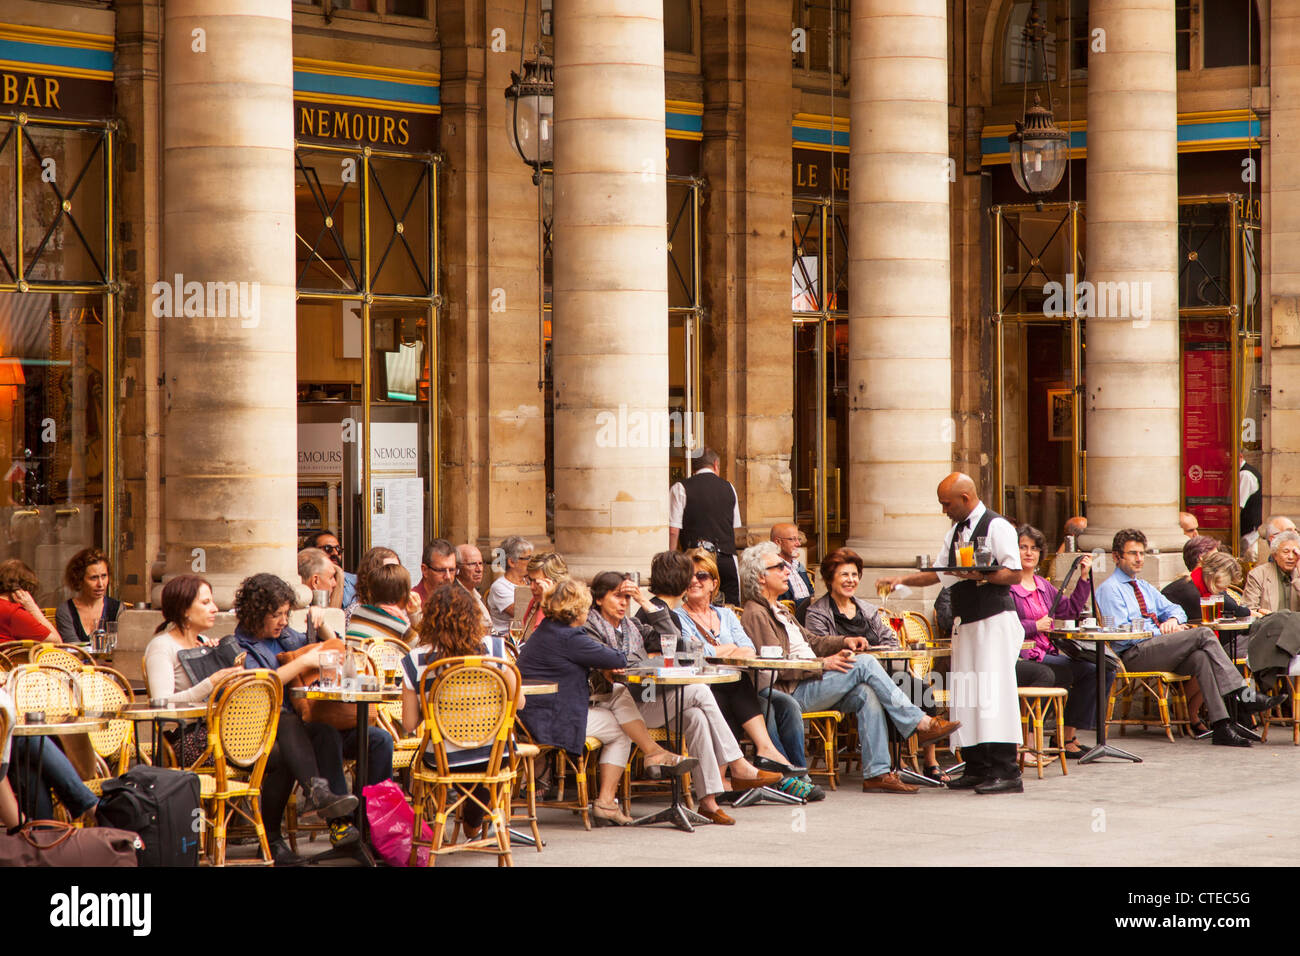 Outdoor-Cafe - Le Nemours in Place Colette, Paris Frankreich Stockfoto